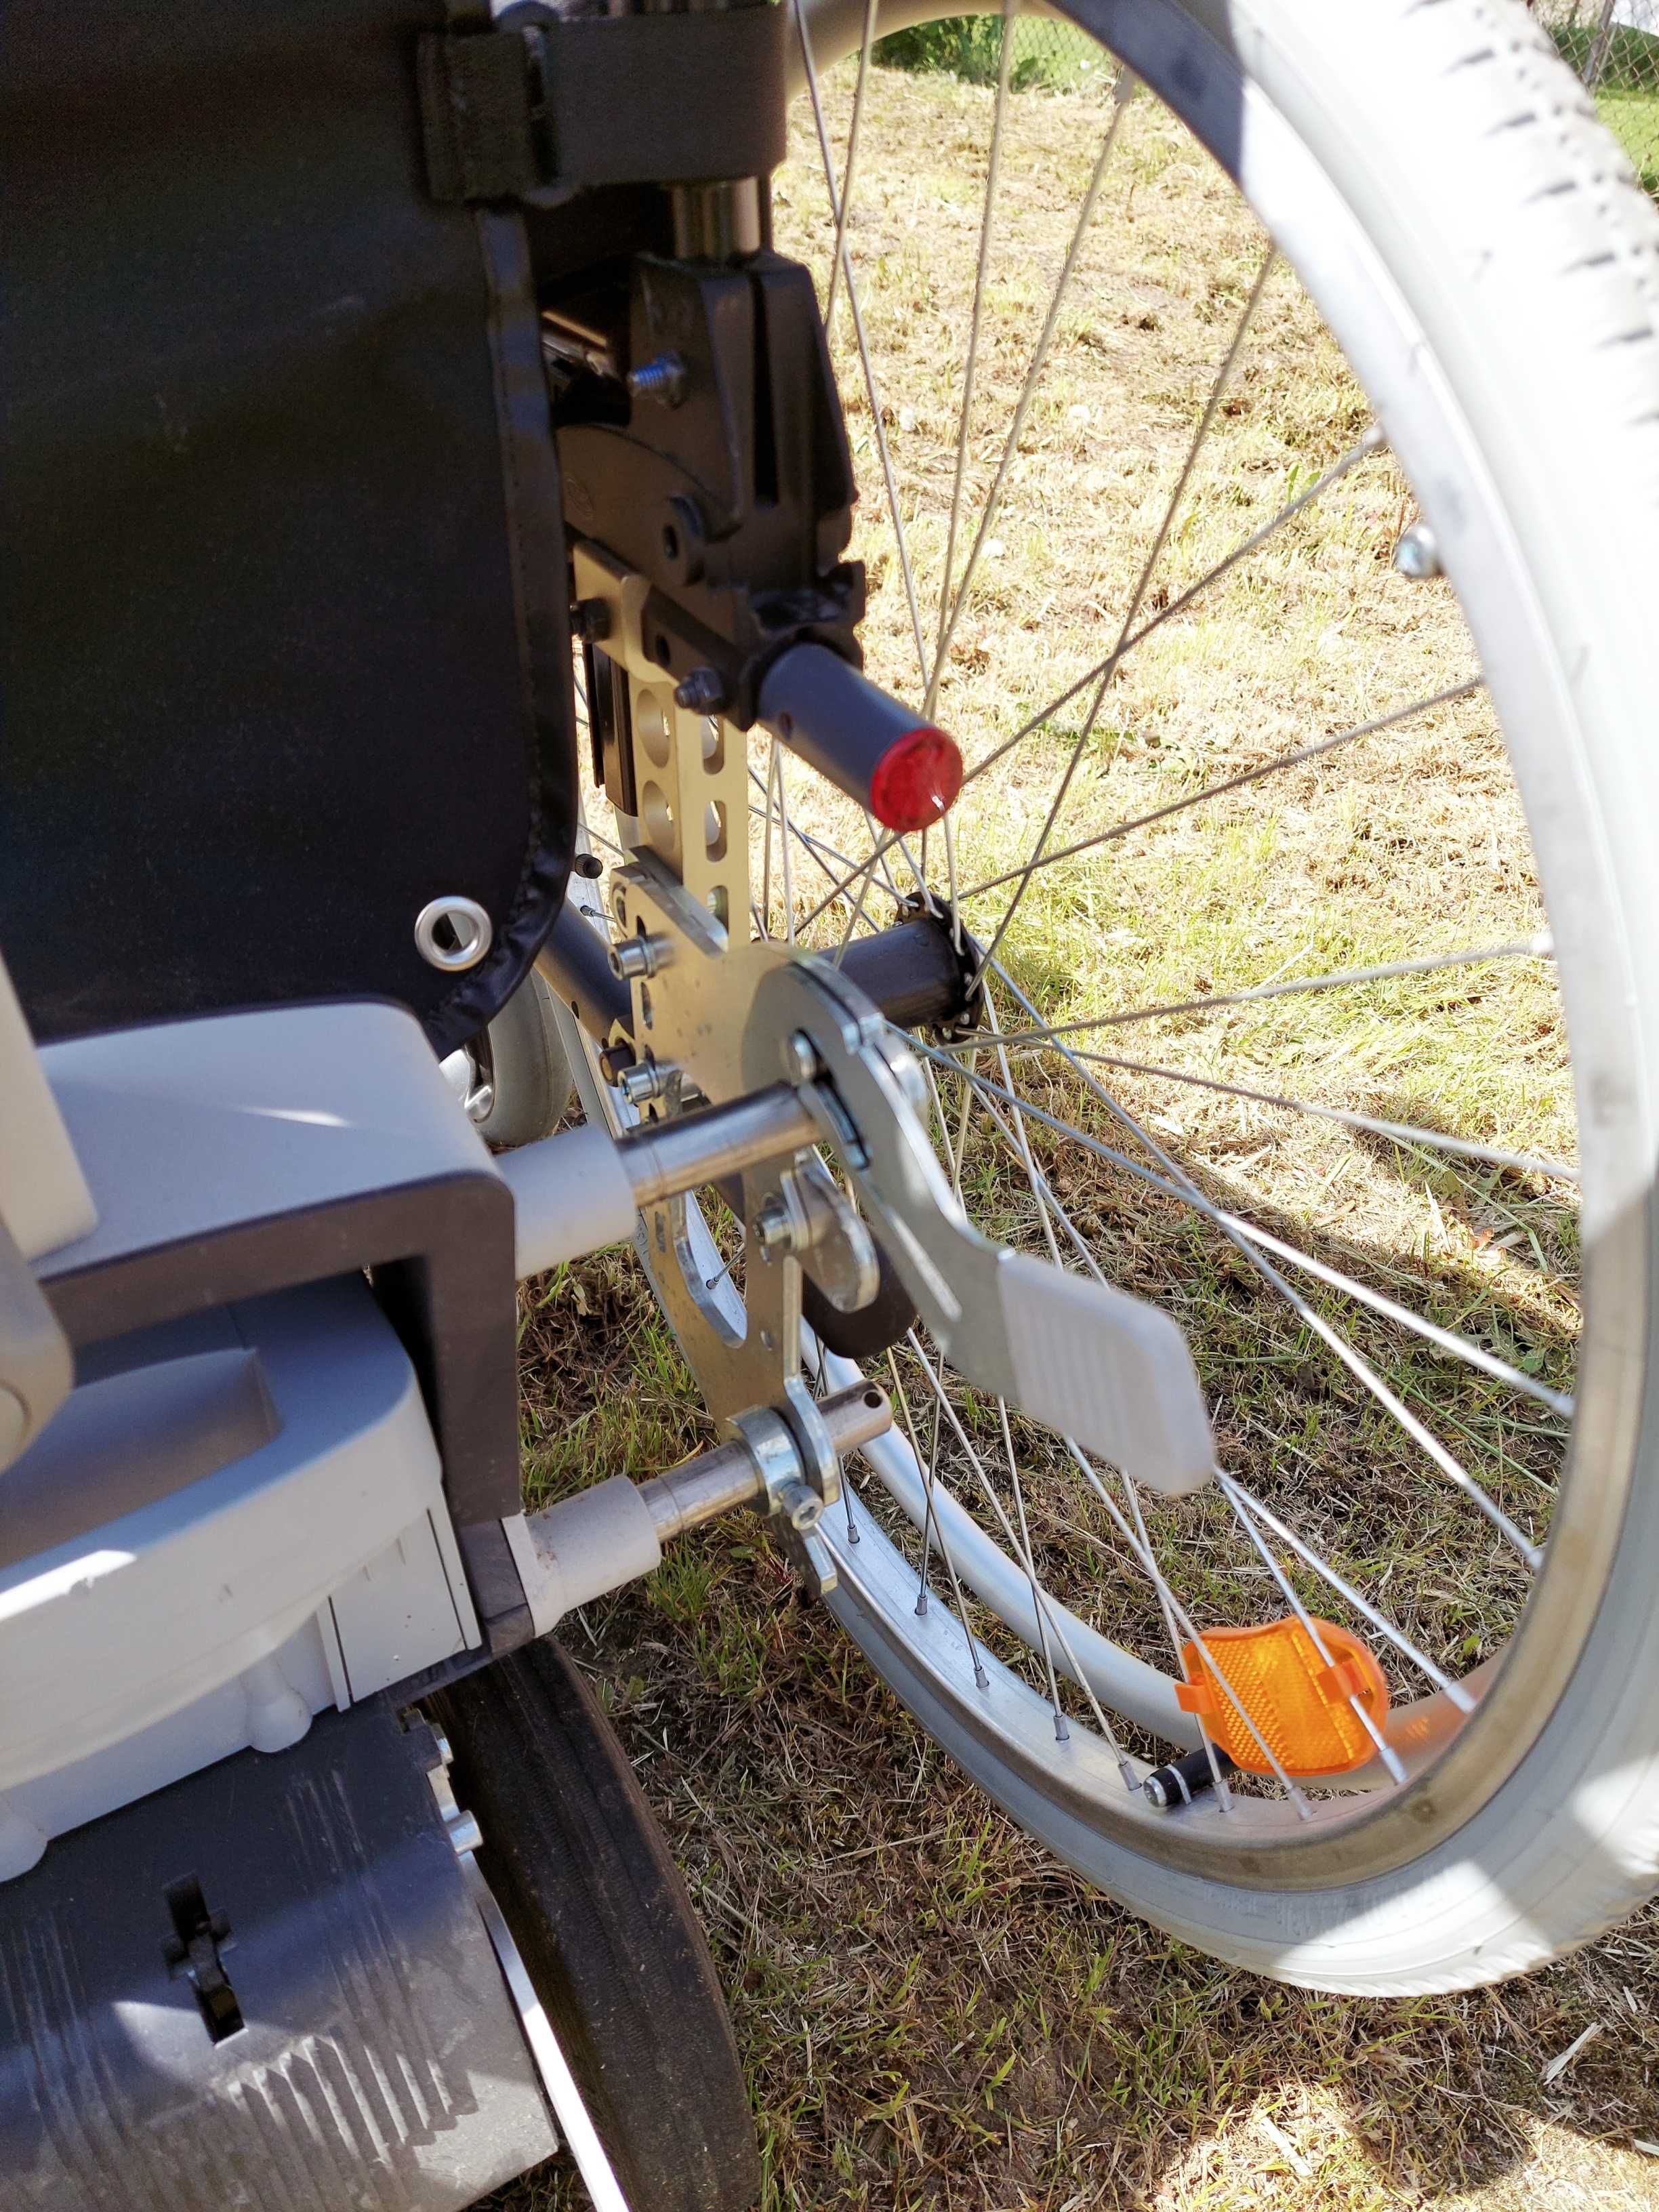 wózek inwalidzki z napędem elektrycznym